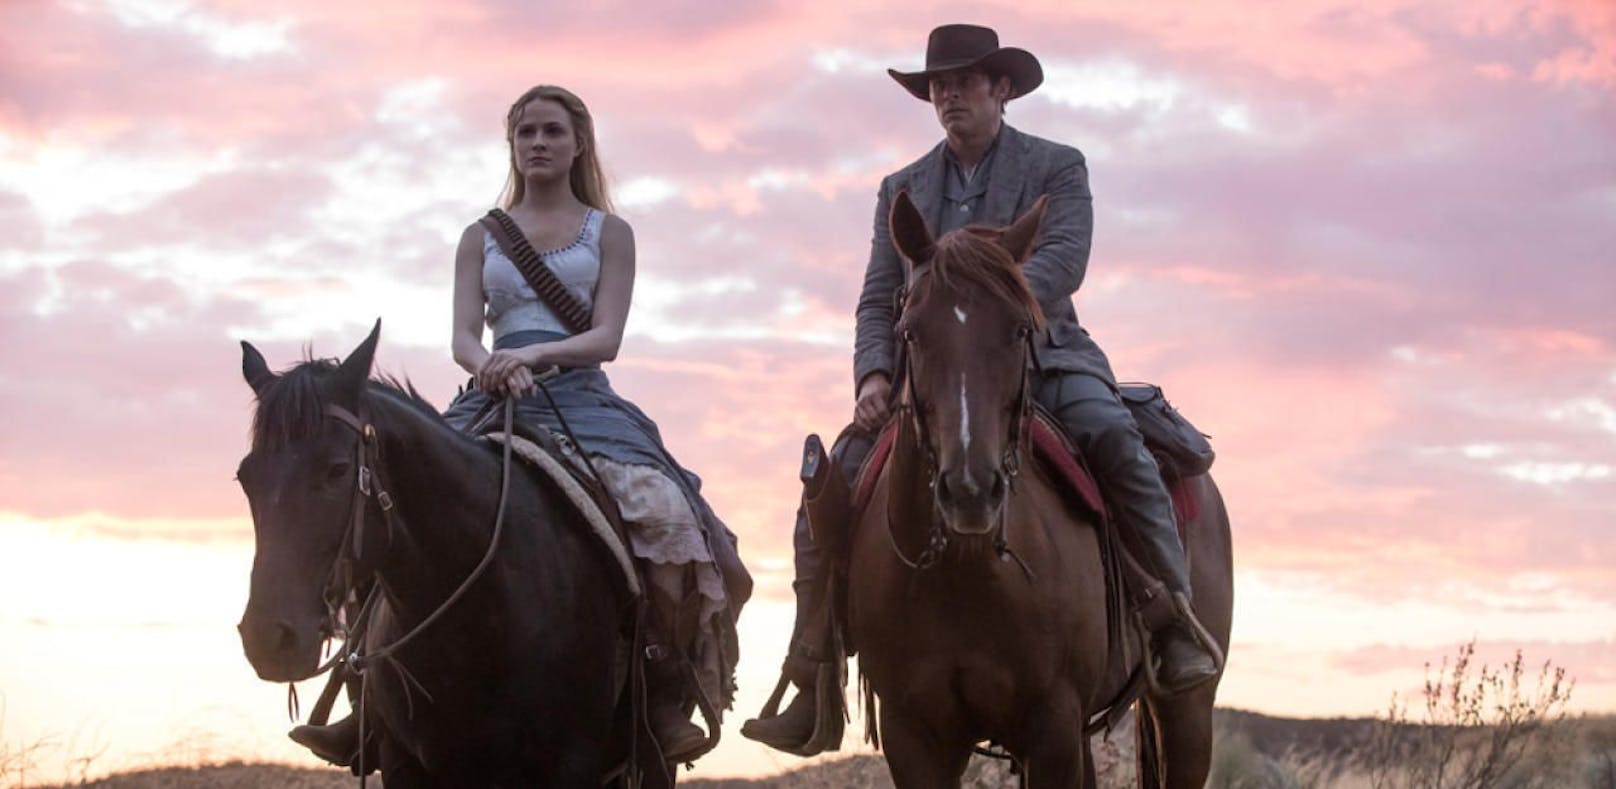 HBO kündigt dritte Staffel von "Westworld" an